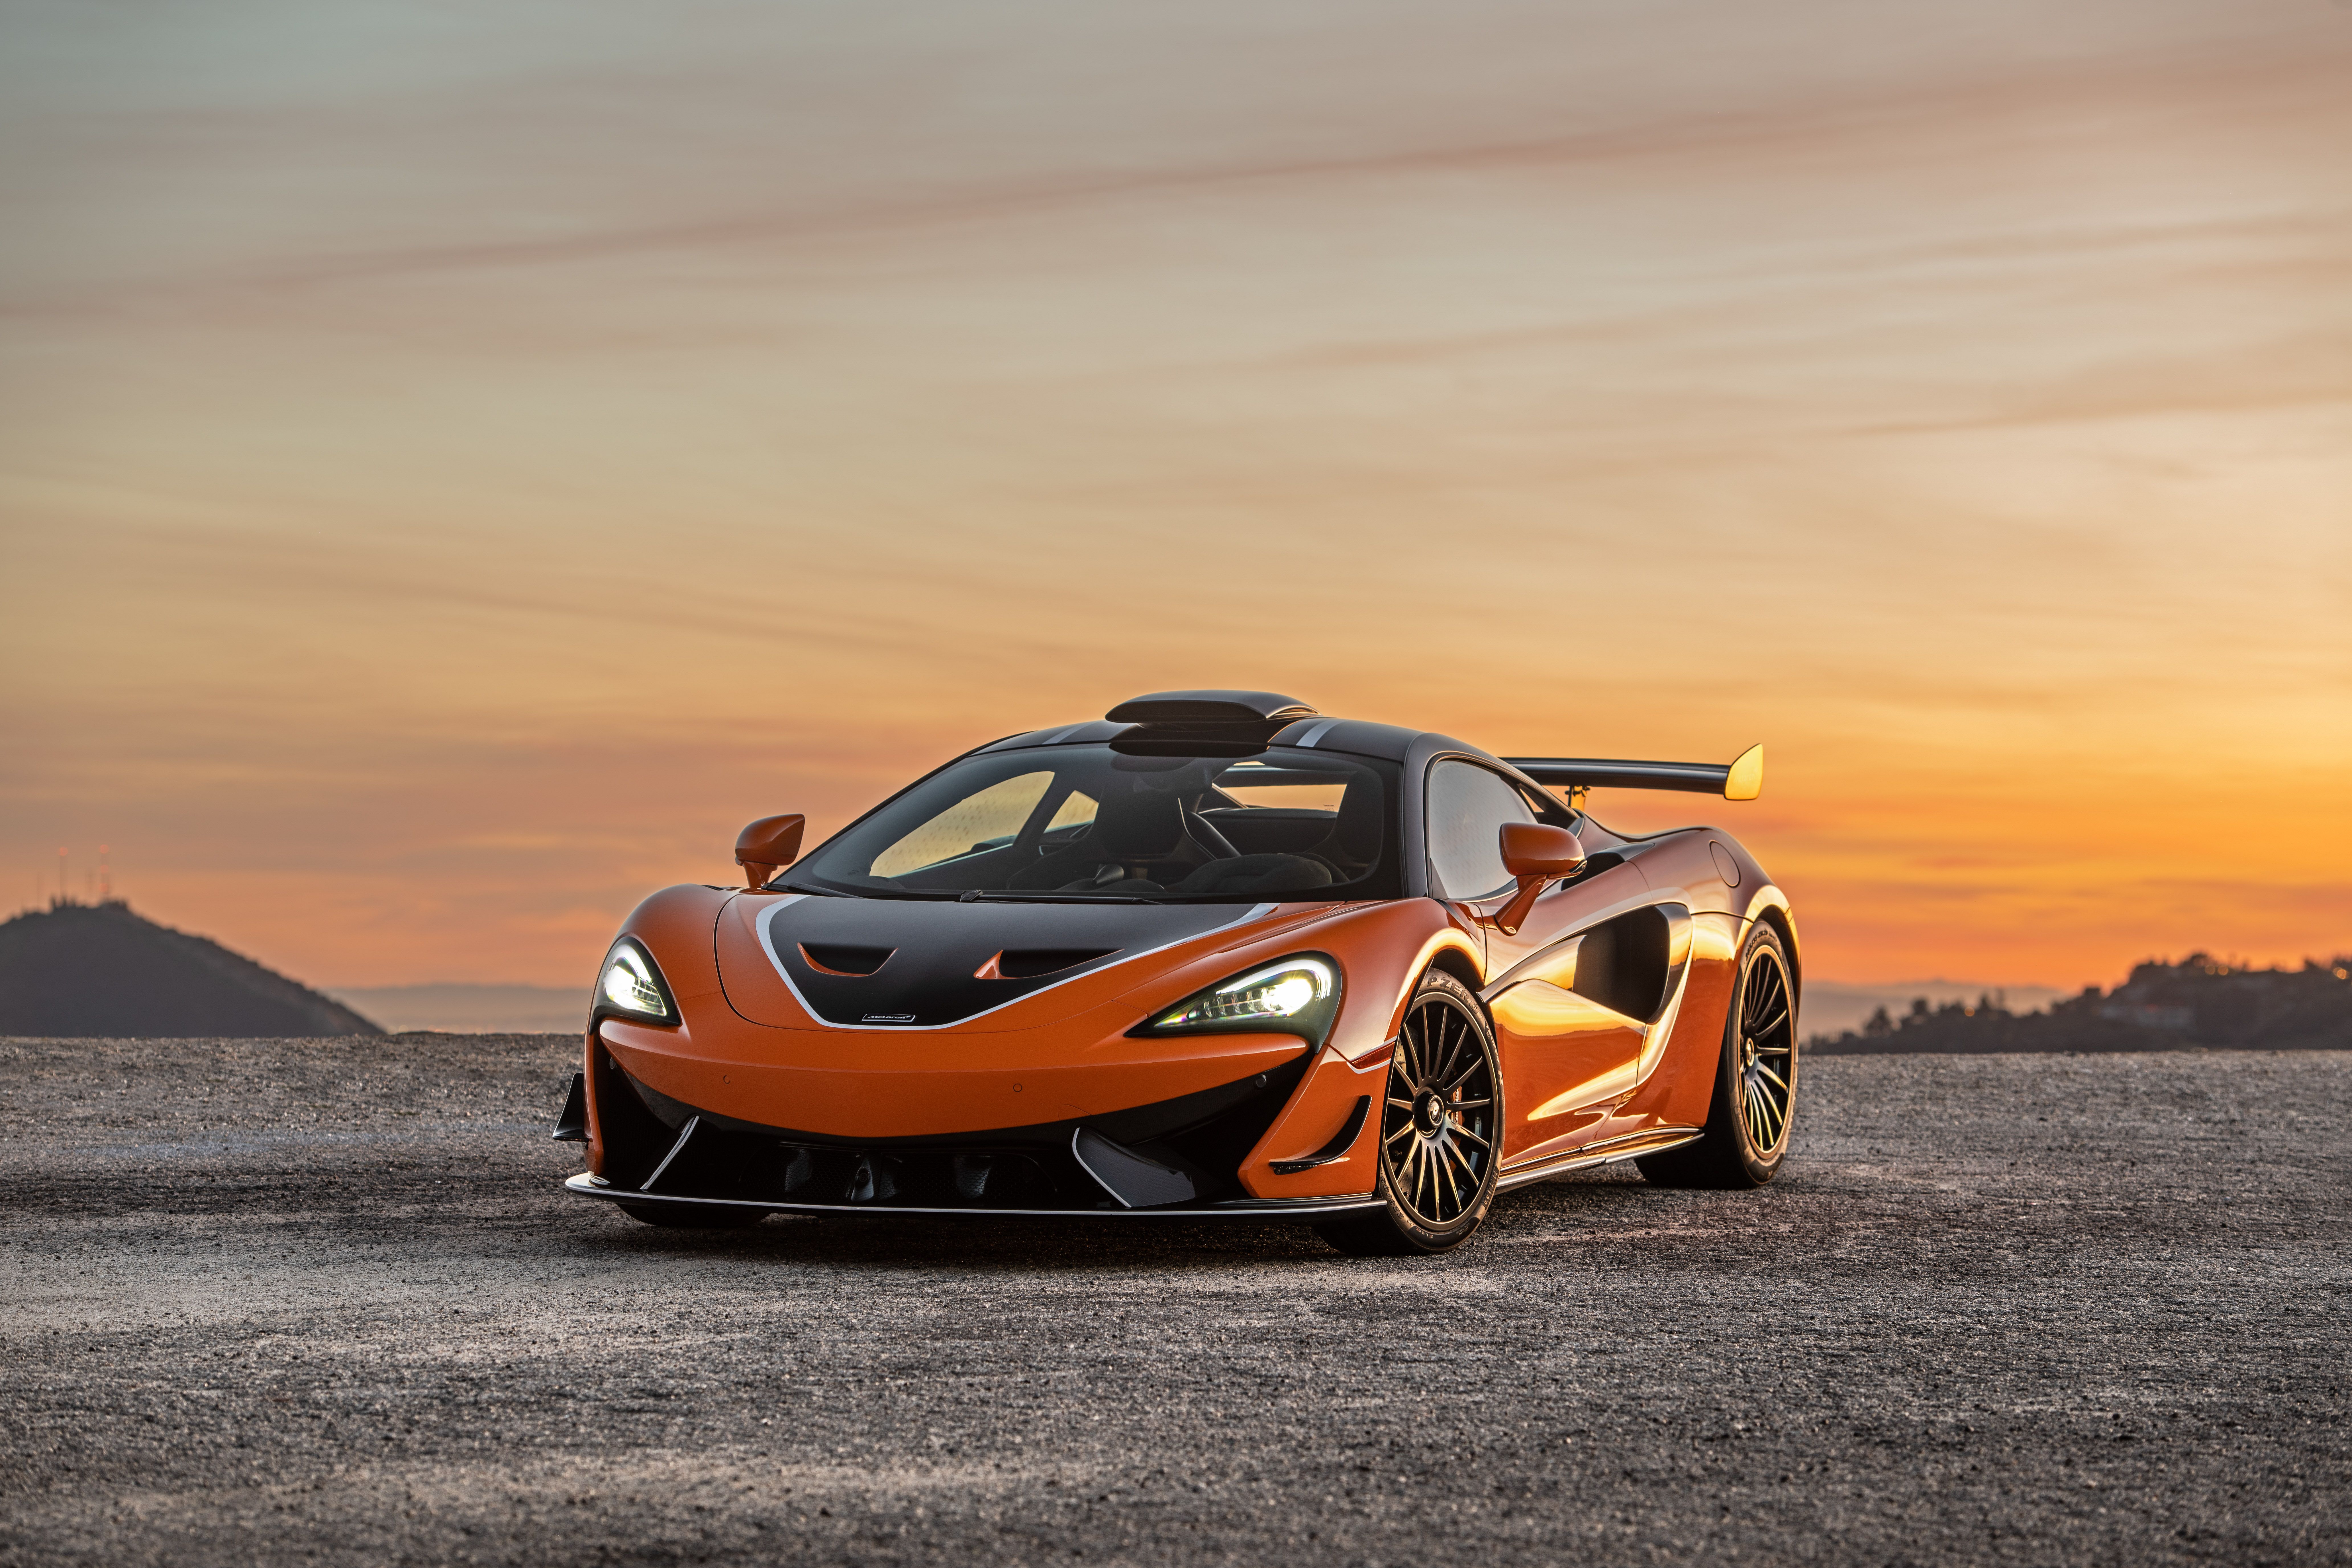 Chiêm ngưỡng chiếc xe đua McLaren tốc độ khiến bạn cảm nhận được sức mạnh của công nghệ và thiết kế hiện đại. Hình ảnh xe đua McLaren đầy phấn khích và hào hứng sẽ khiến bạn muốn xem ngay bây giờ.